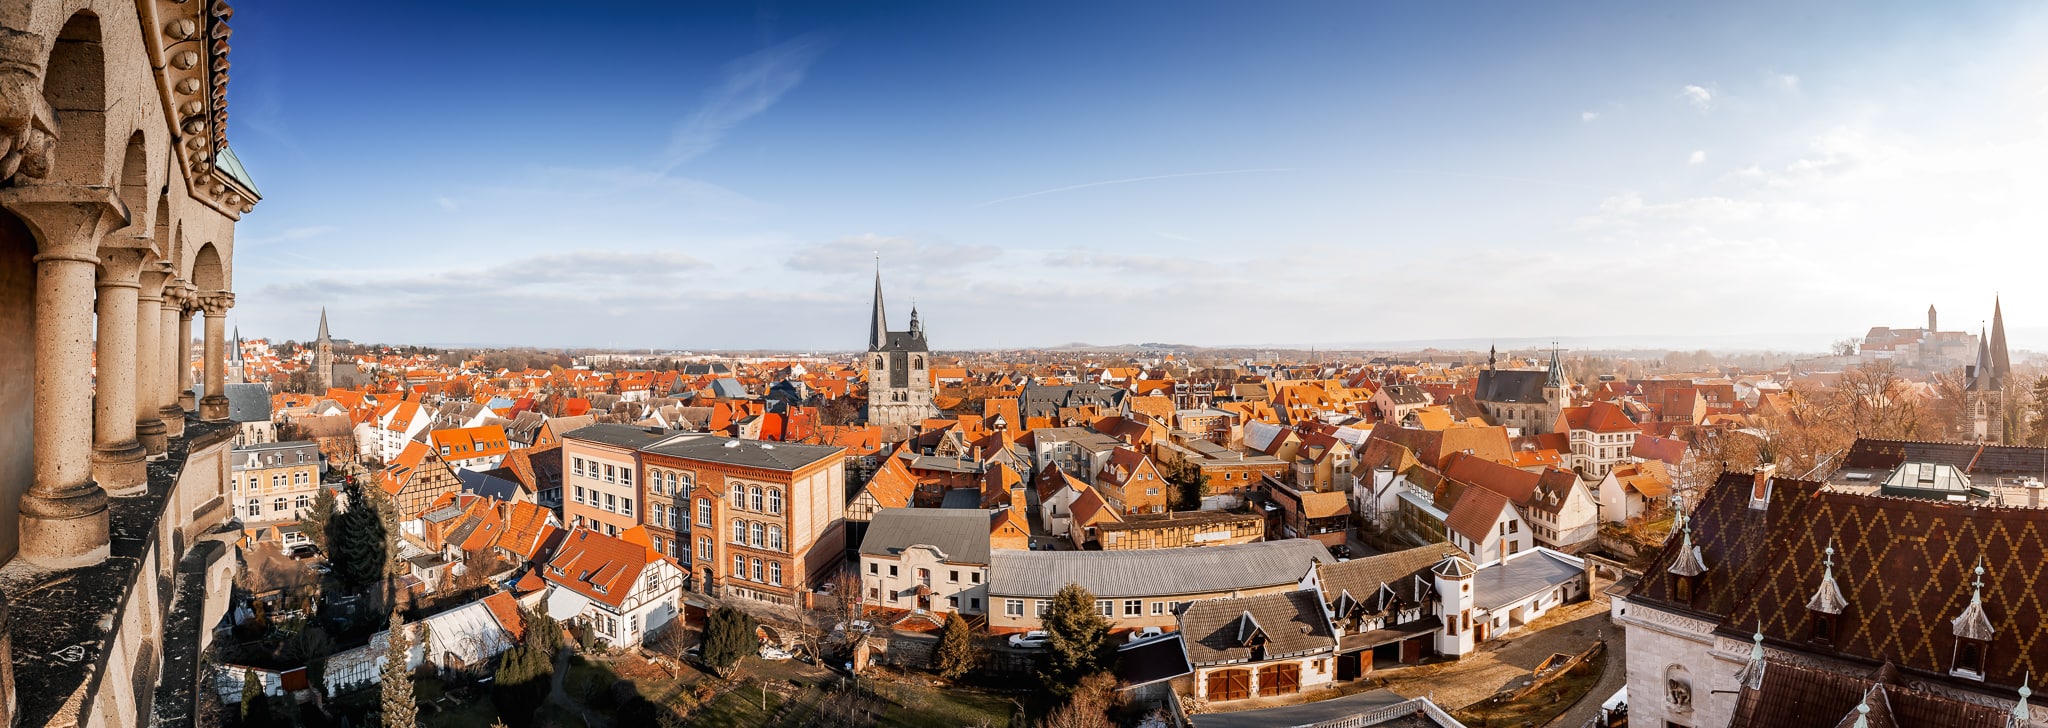 Panorama von Quedlinburg - die Welterbestadt von oben